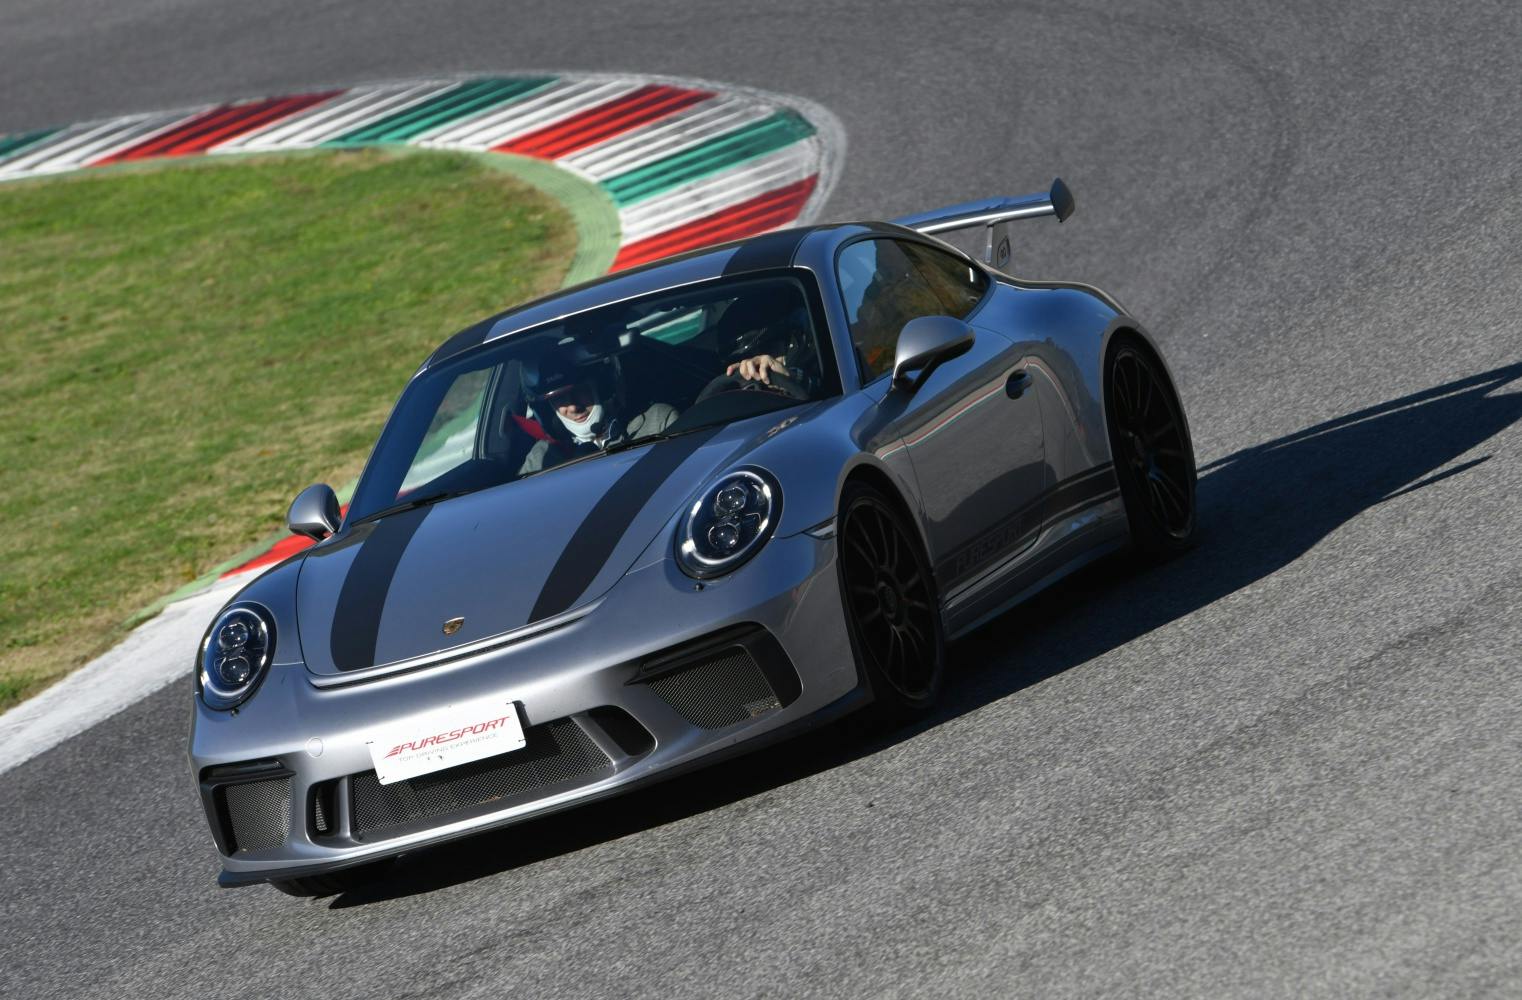 Porsche 911 GT3 selber fahren | eine Runde am Red Bull Ring